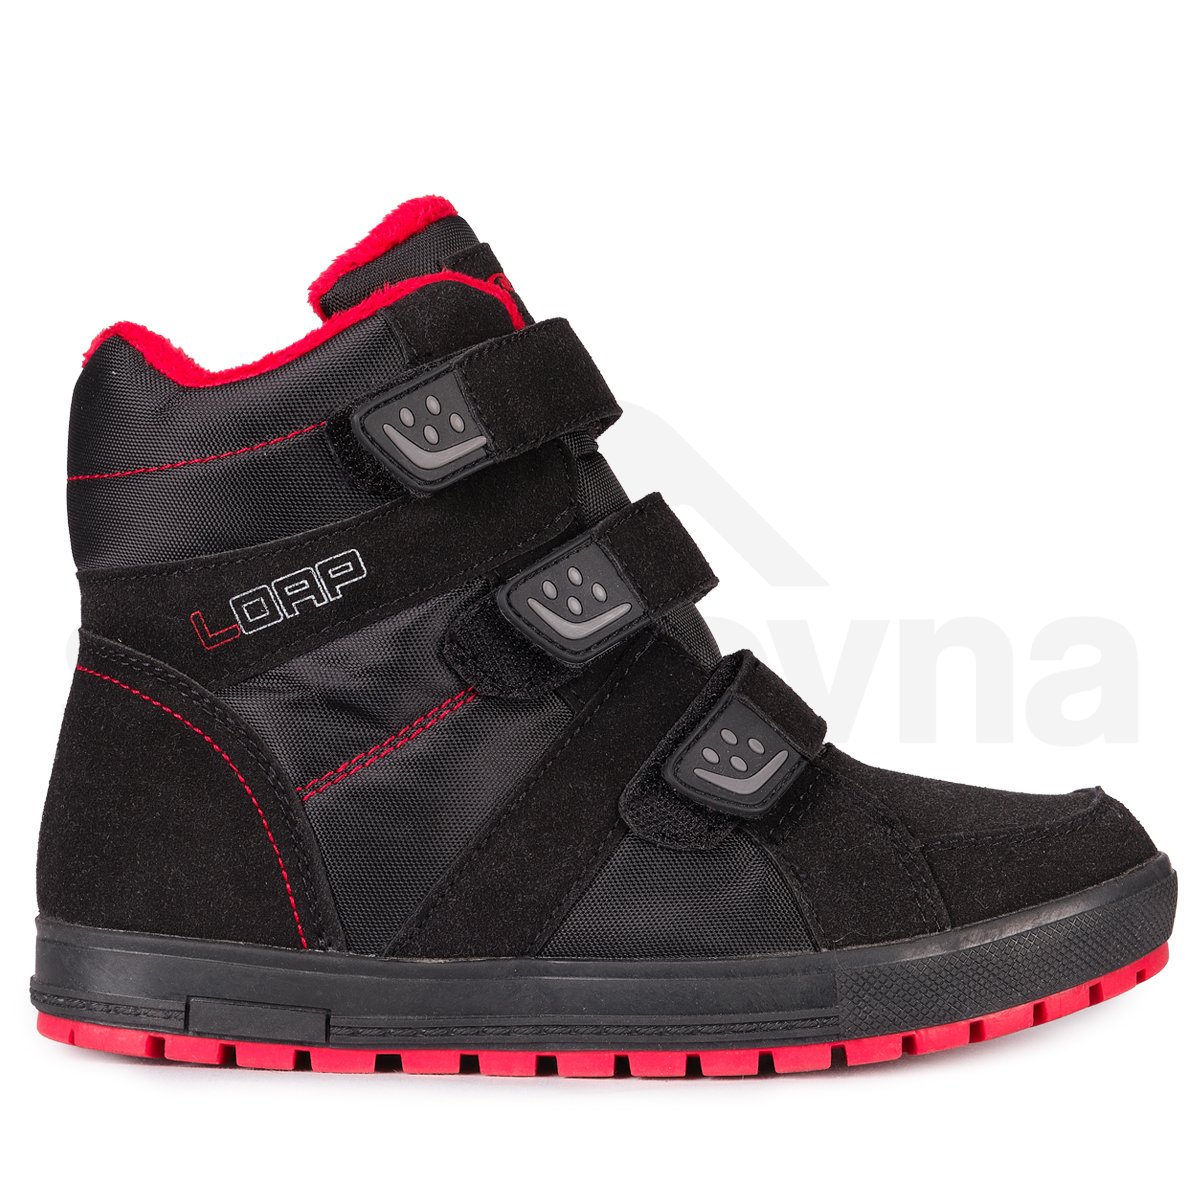 Dětská zimní obuv Loap Manic J - černá/červená